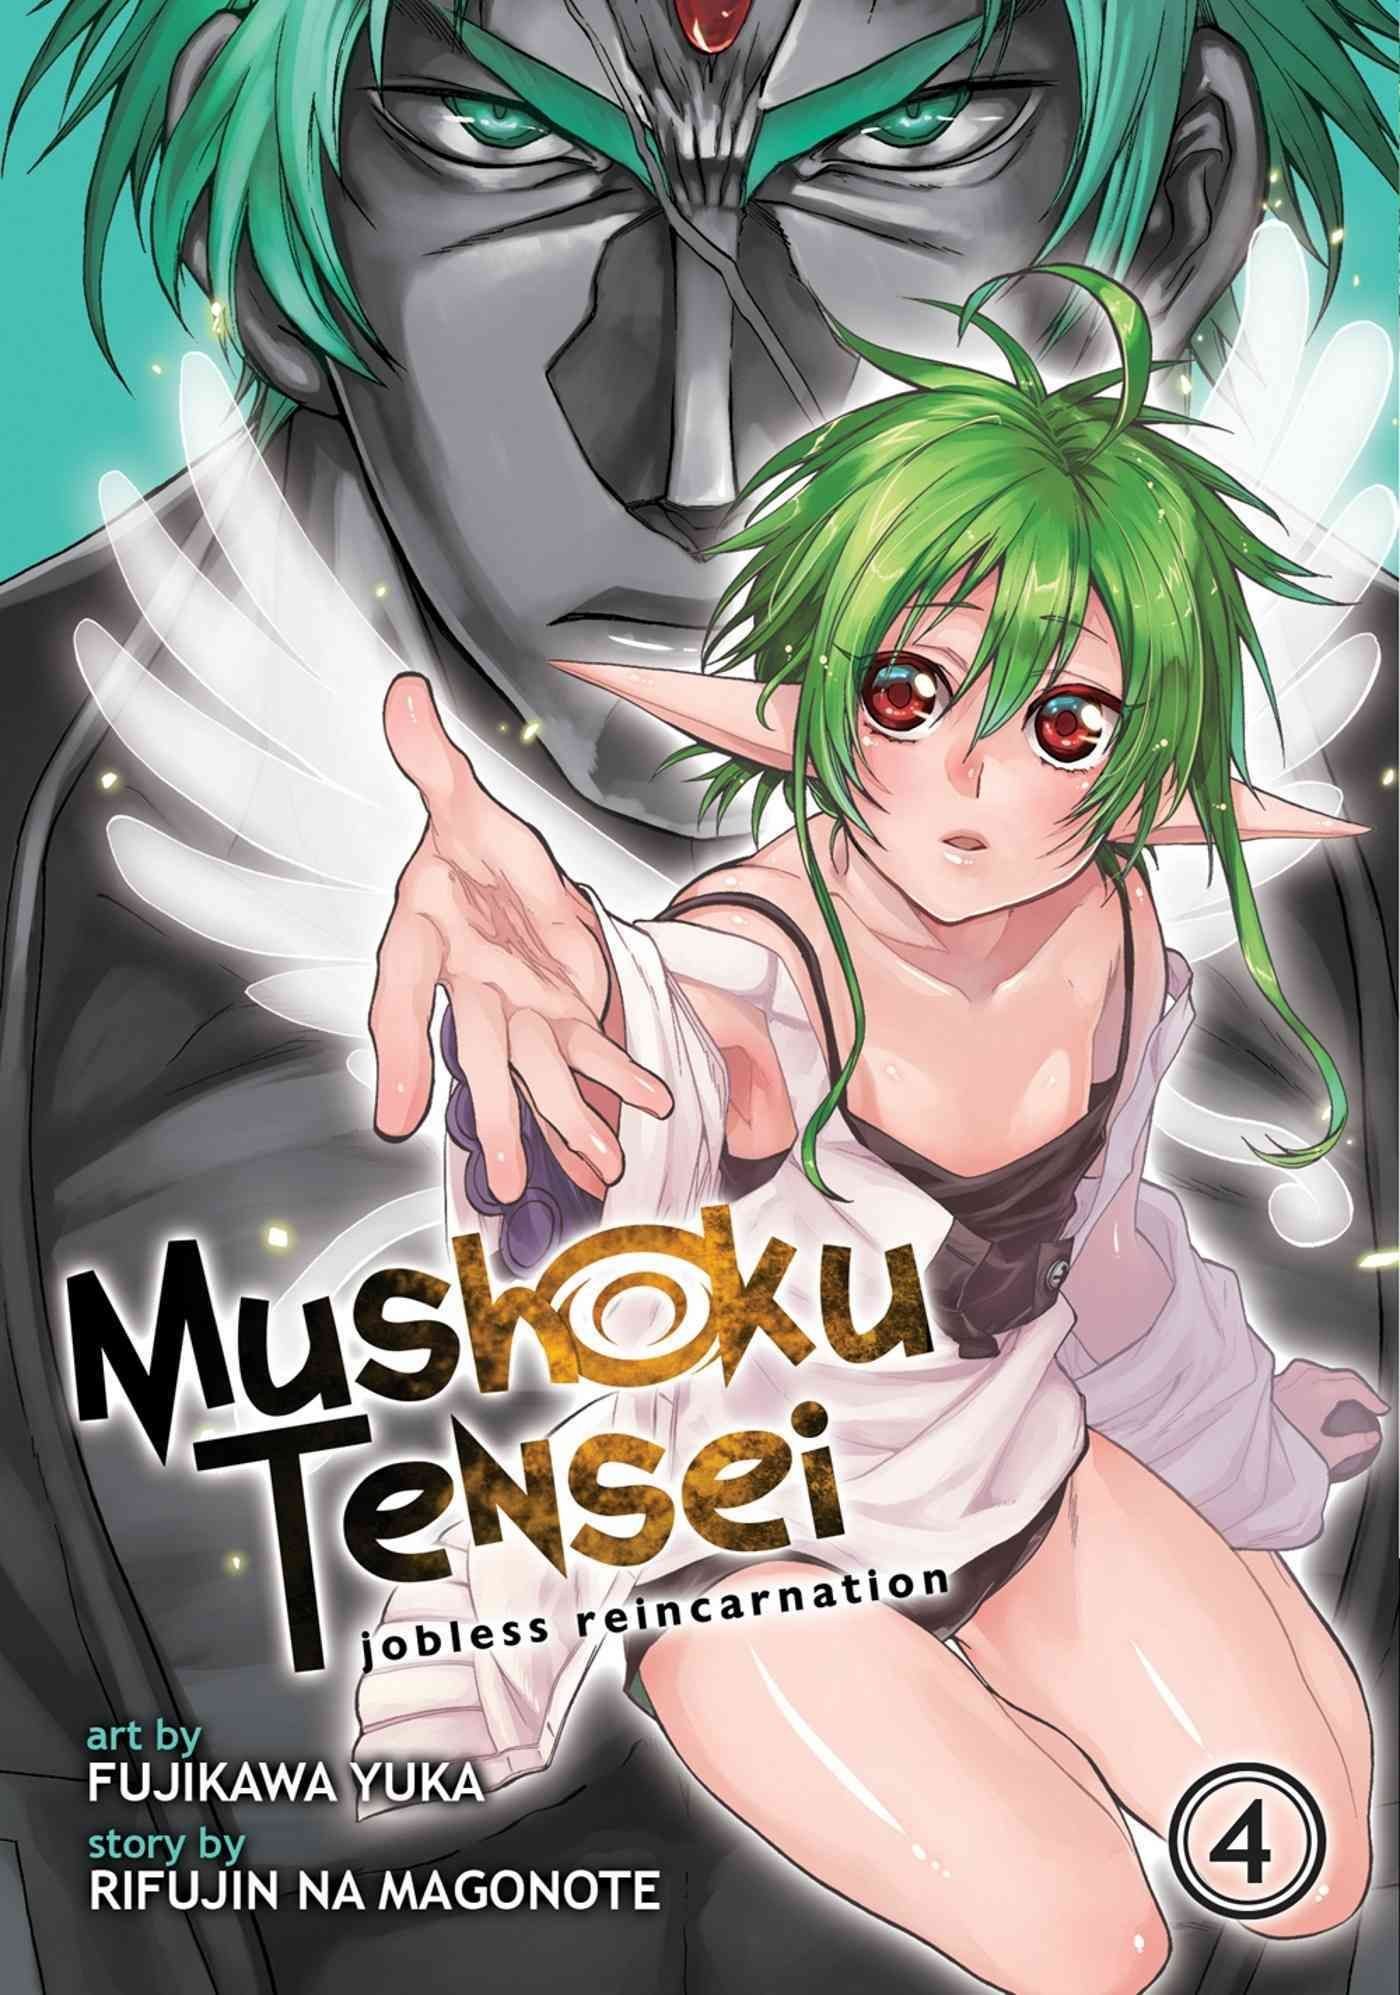 Mushoku Tensei Season 2 Episode 4 Review - But Why Tho?